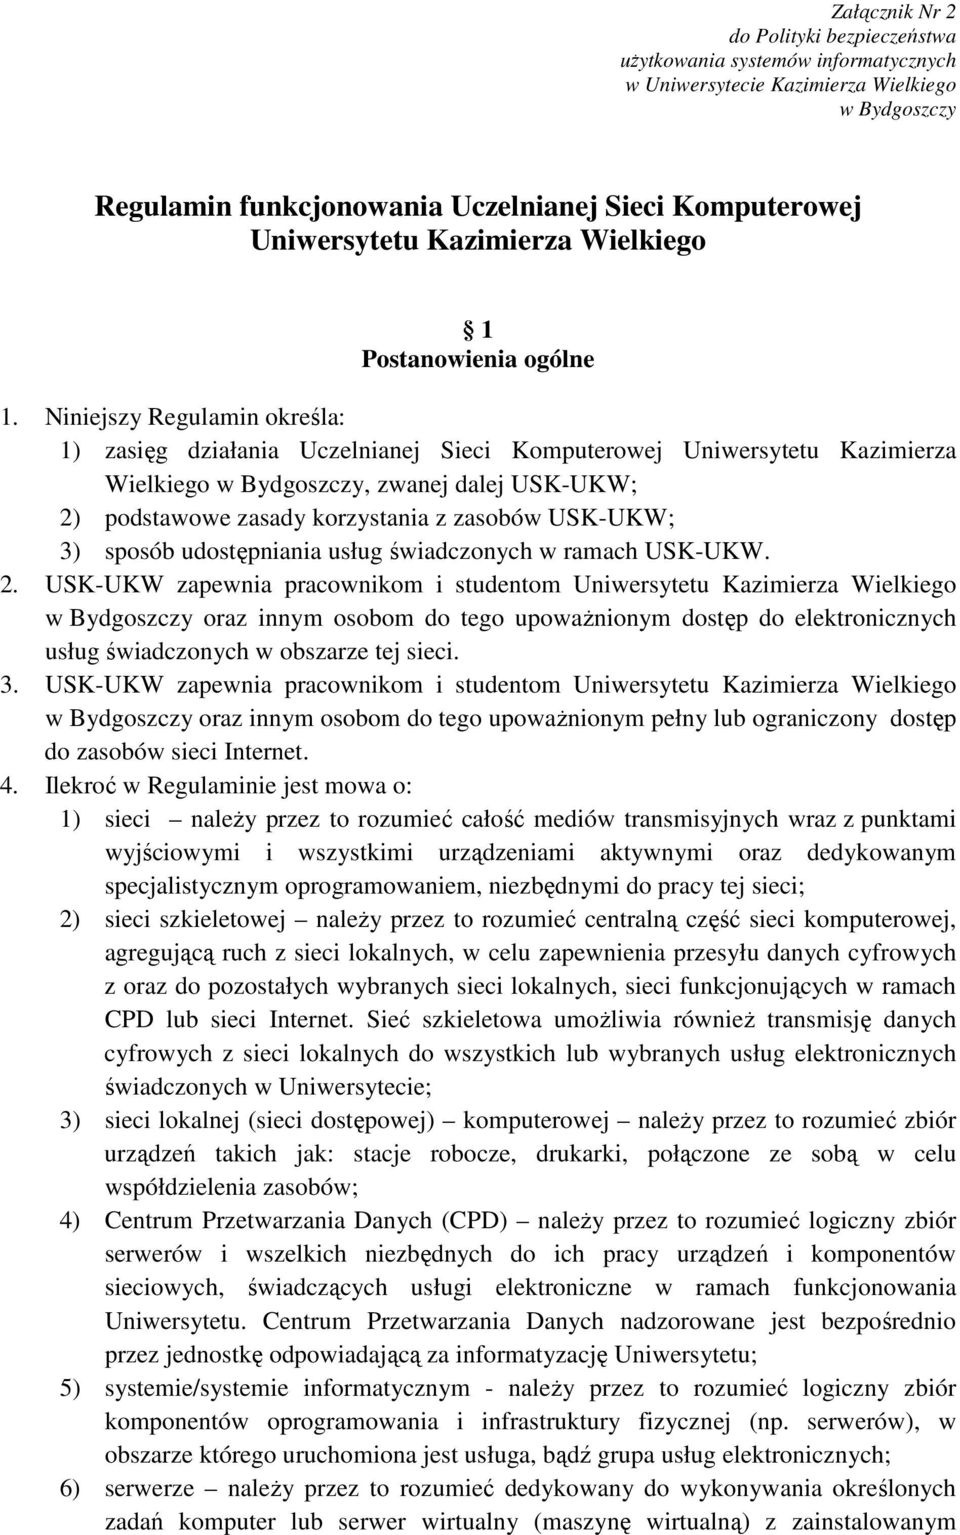 Niniejszy Regulamin określa: 1) zasięg działania Uczelnianej Sieci Komputerowej Uniwersytetu Kazimierza Wielkiego w Bydgoszczy, zwanej dalej USK-UKW; 2) podstawowe zasady korzystania z zasobów